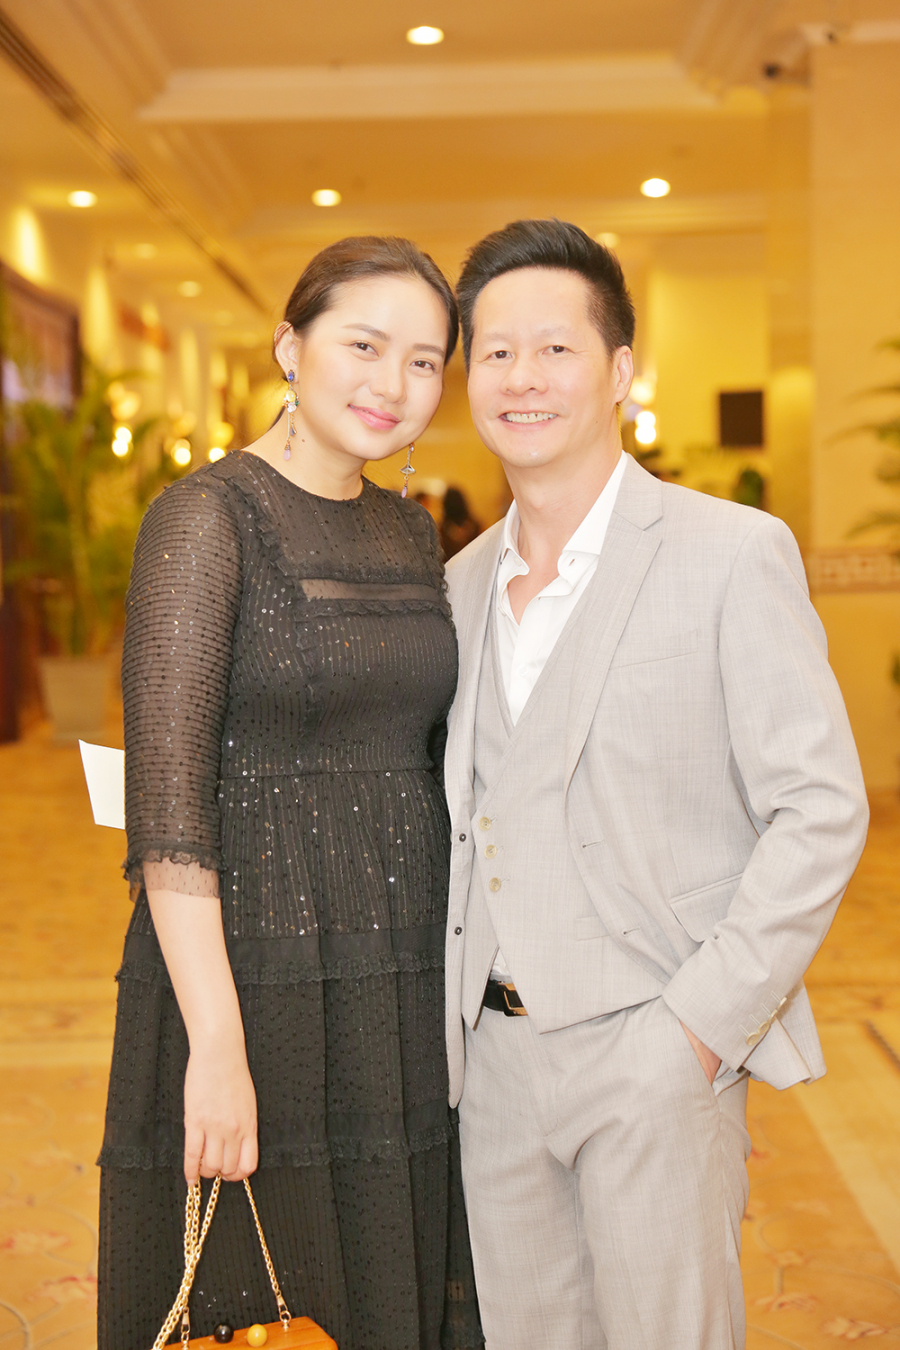 Cuối năm 2015, Phan Như Thảo bất ngờ lên xe hoa với doanh nhân Đức An - hơn cô 26 tuổi và từng có 3 đời vợ